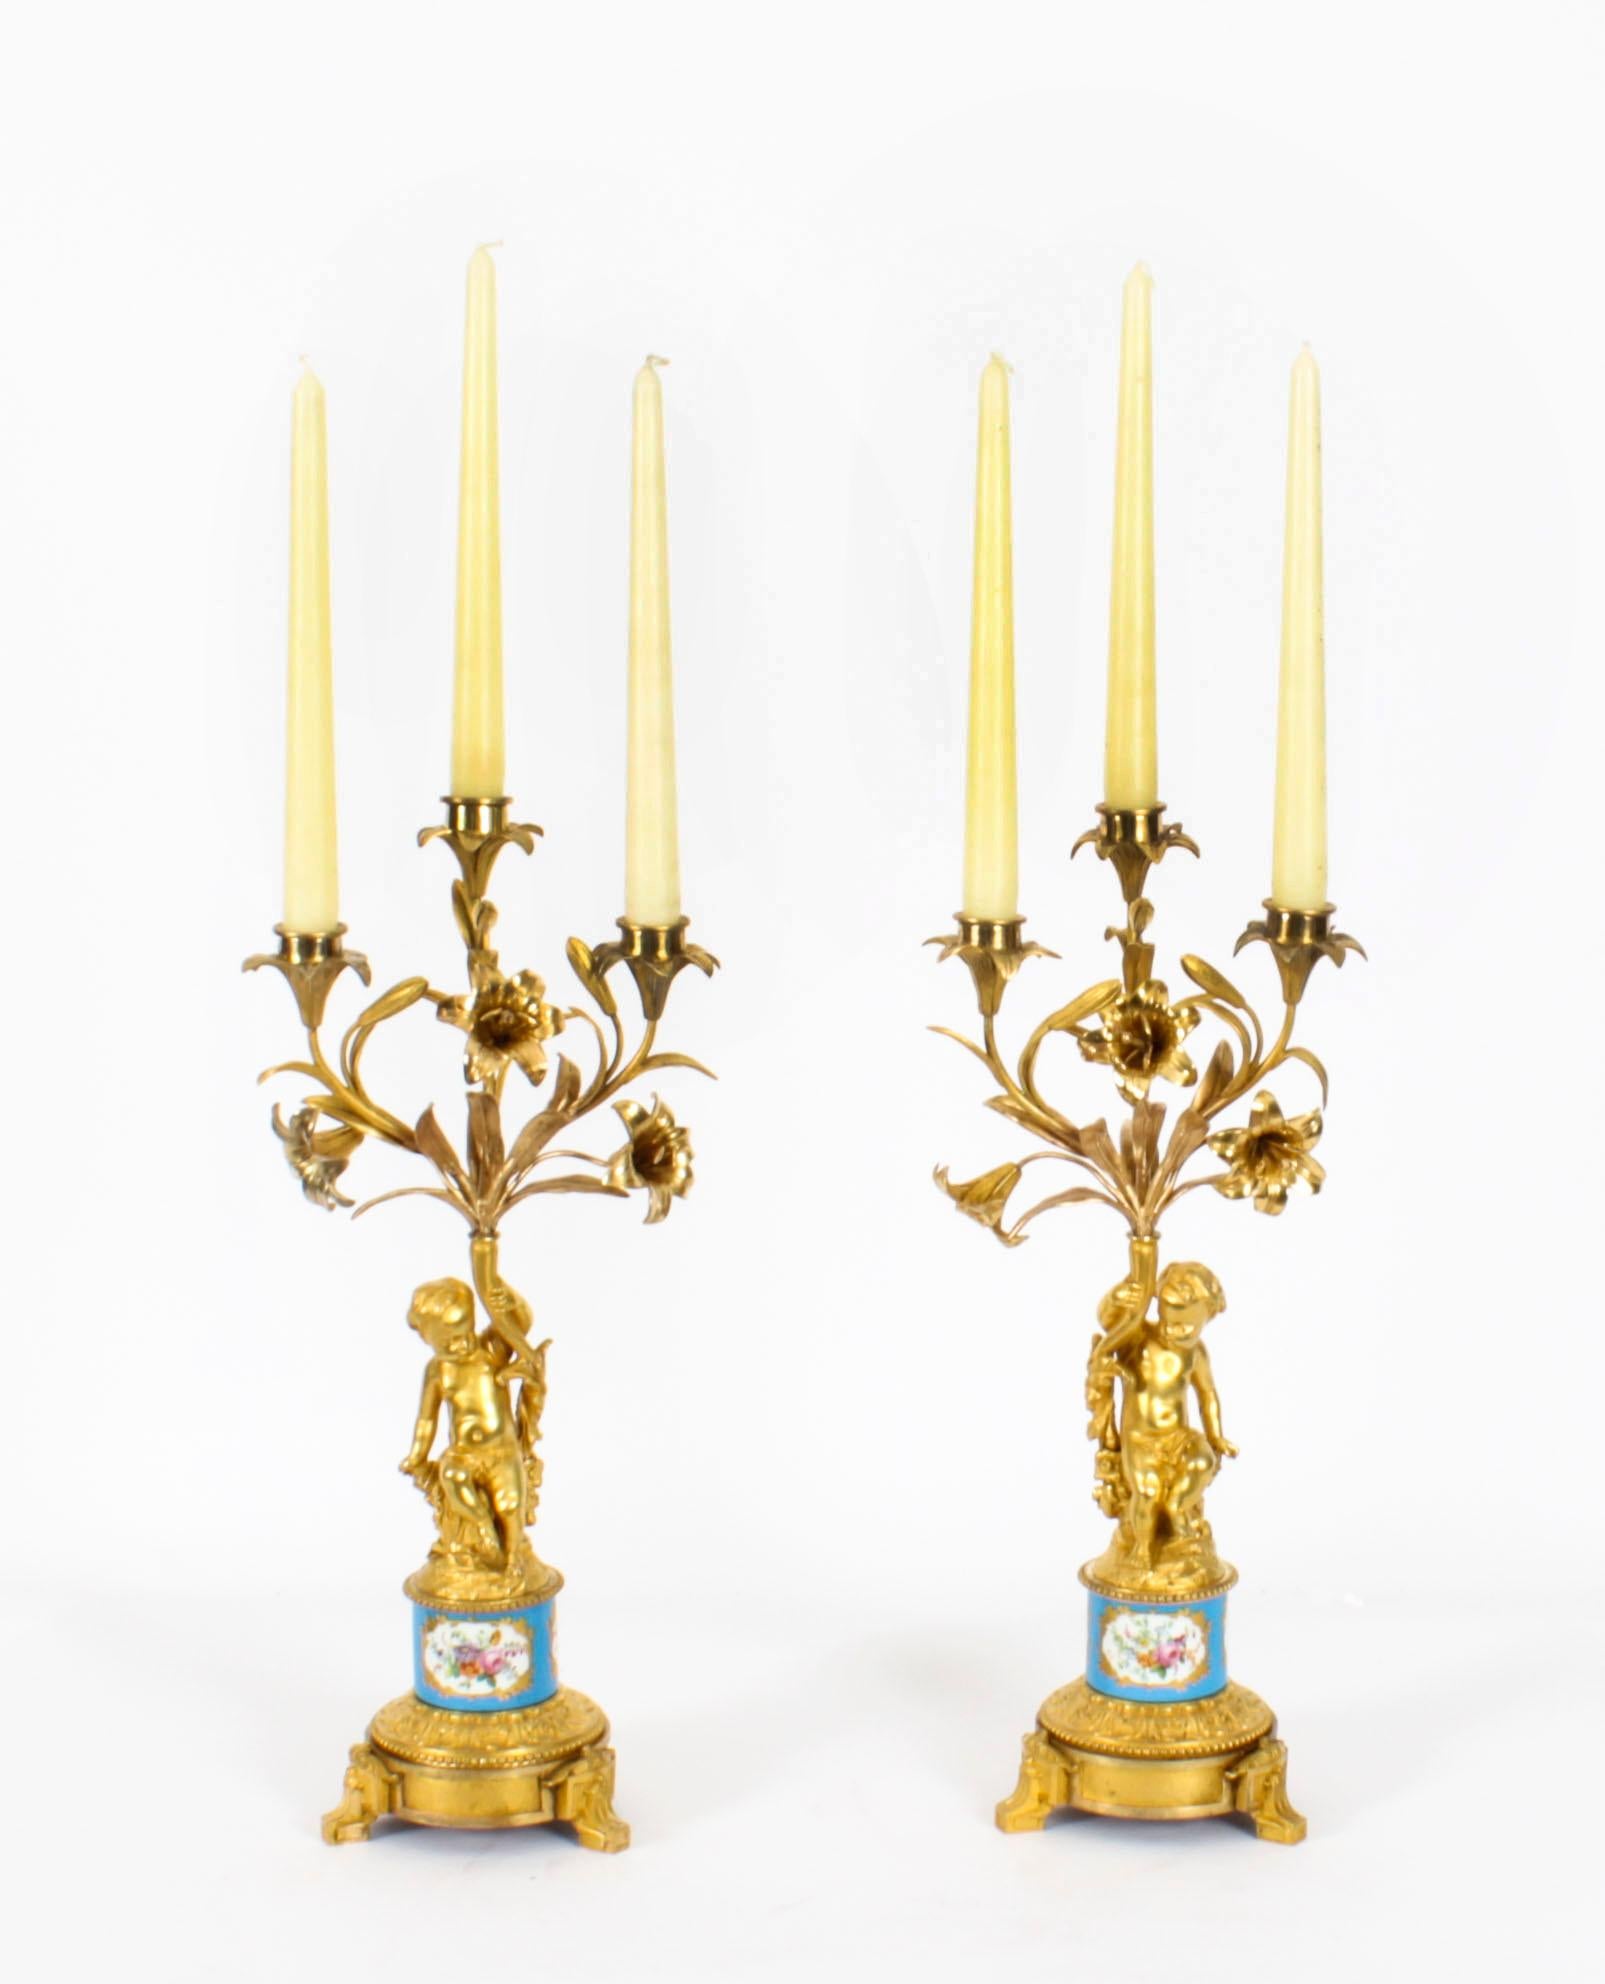 Paire de candélabres à trois lumières de la fin du XIXe siècle, montés en porcelaine et en bronze doré, chacun avec des branches florales et des feuilles au-dessus d'une colonne centrale chérubinique, sur un collier en porcelaine peinte de motifs